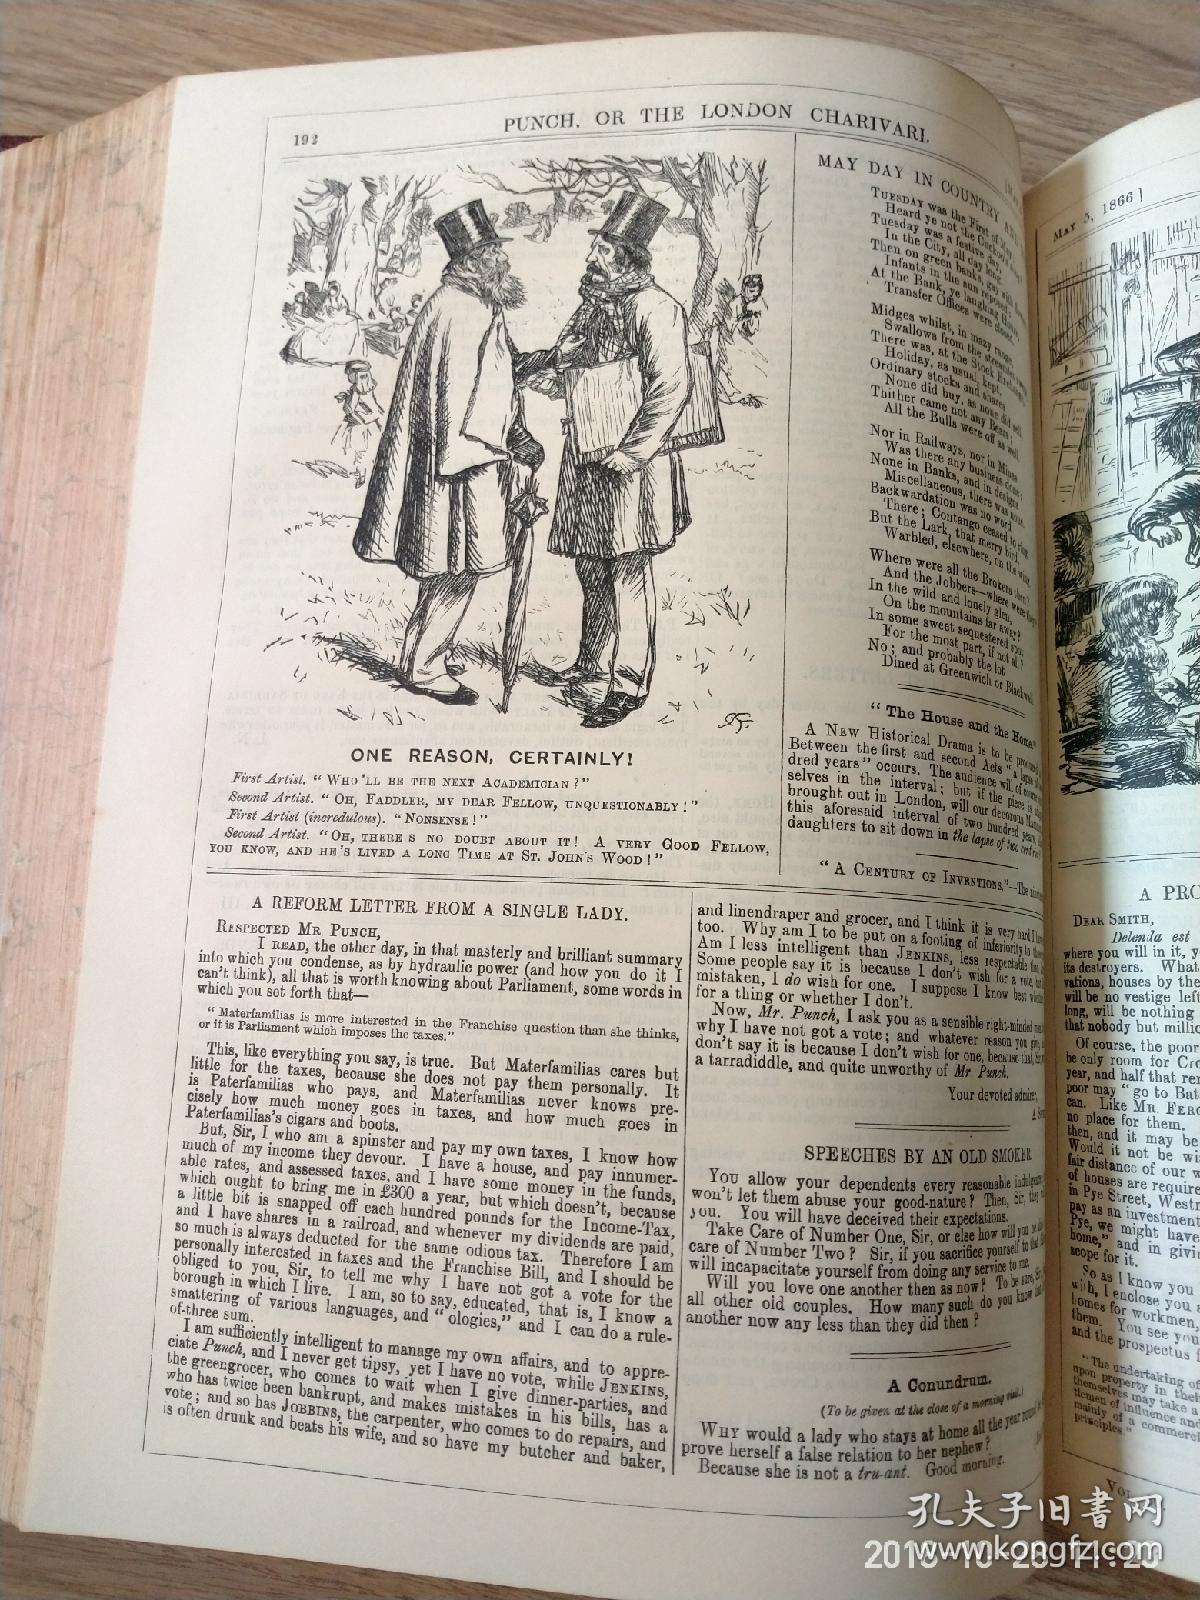 英国punch漫画杂志两年合订本1865-67年,皮脊布面精装